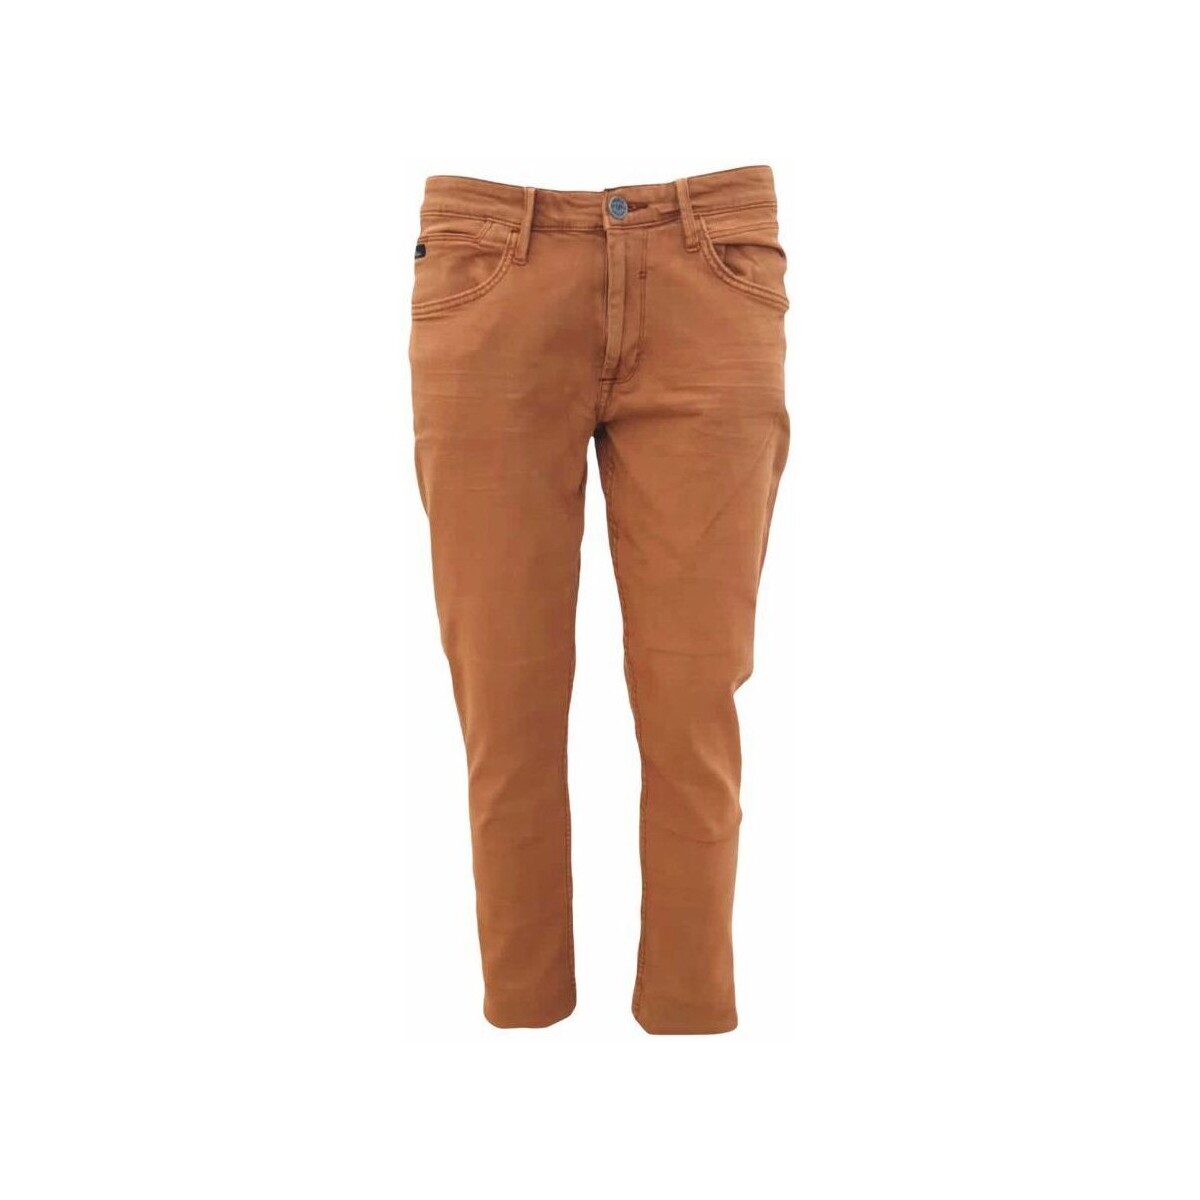 Abbigliamento Uomo Pantaloni Blend Of America  Arancio